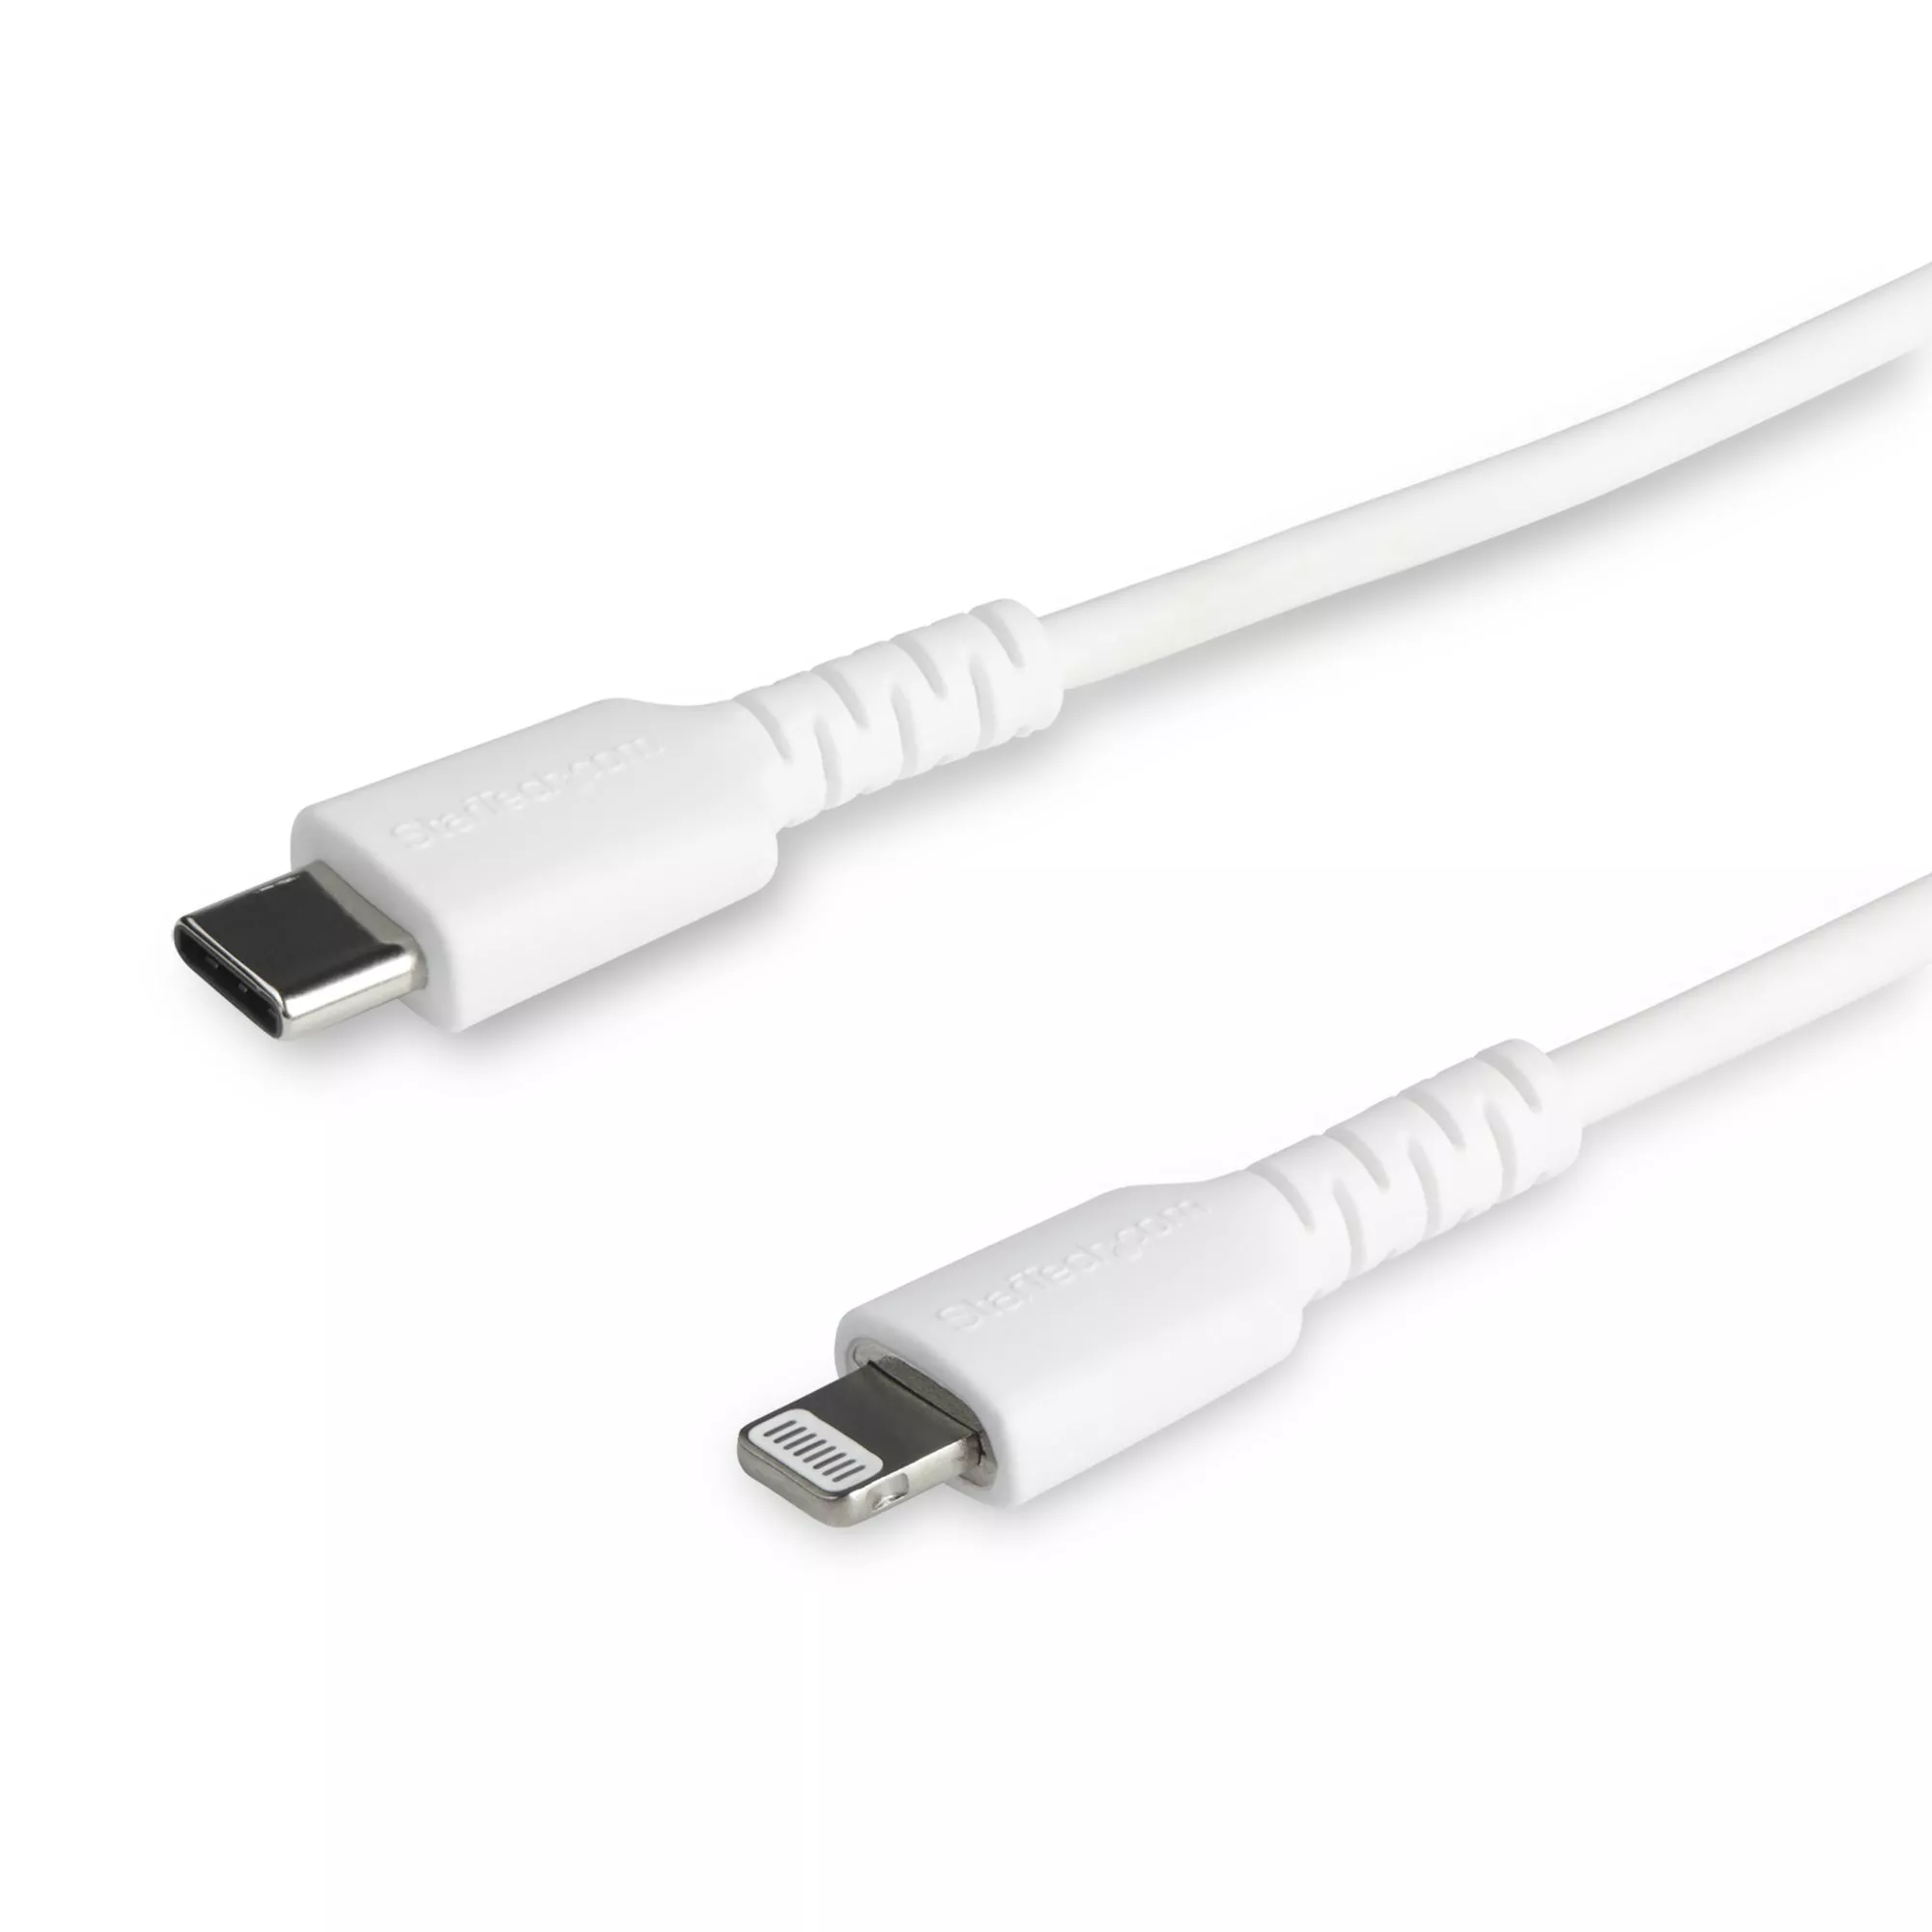 Achat StarTech.com Câble USB-C vers Lightning Blanc Robuste 1m et autres produits de la marque StarTech.com